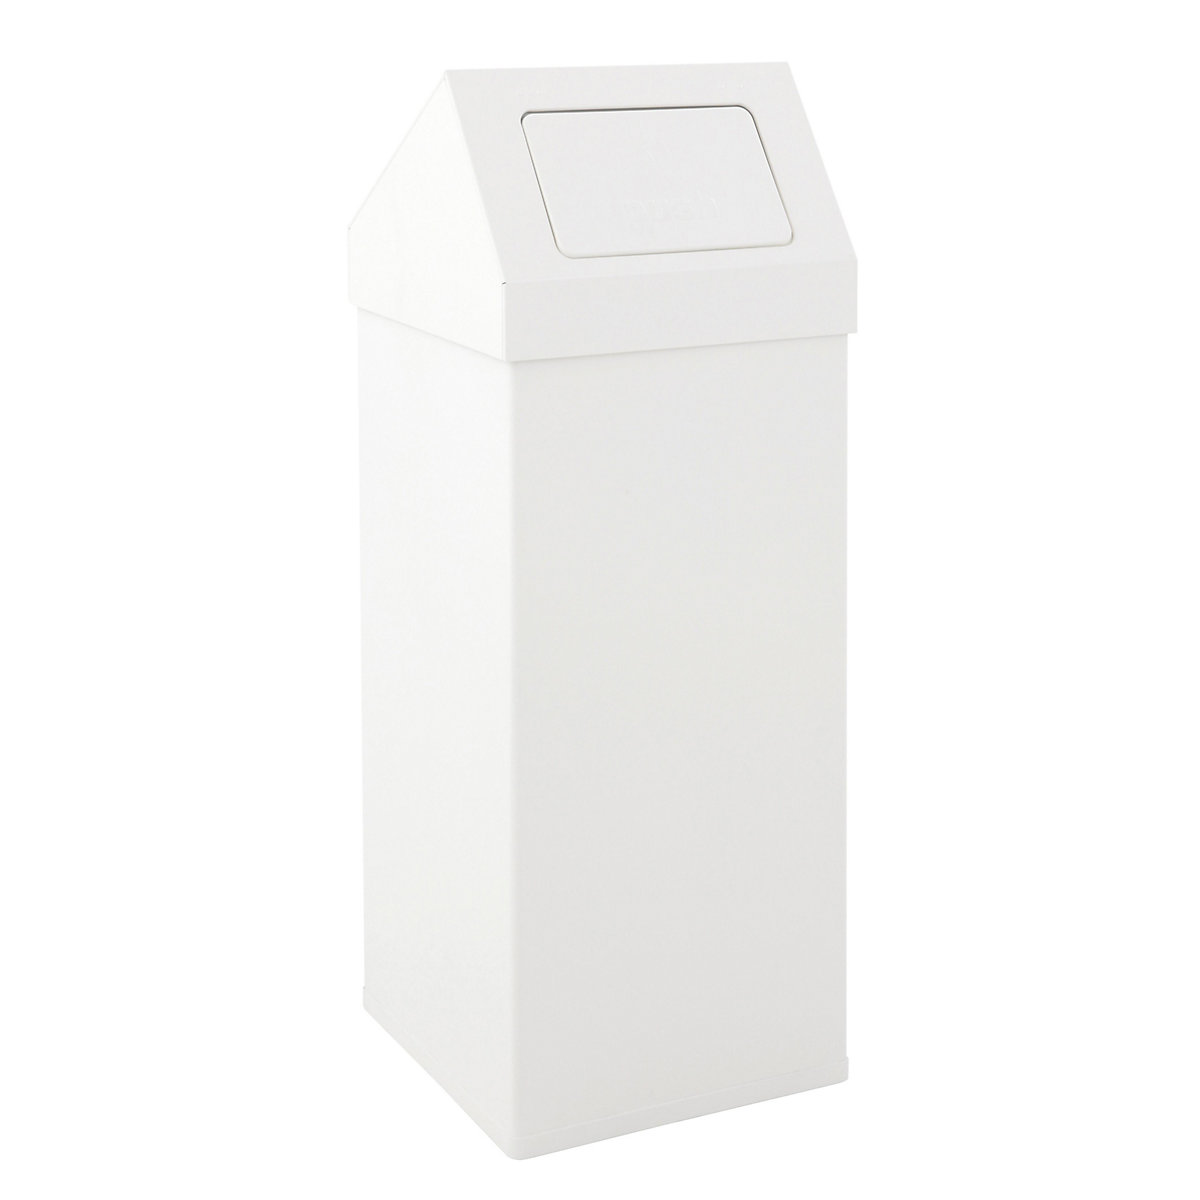 Abfallbehälter mit Push-Deckel, Volumen 110 l, BxHxT 390 x 1000 x 390 mm, Aluminium, weiß